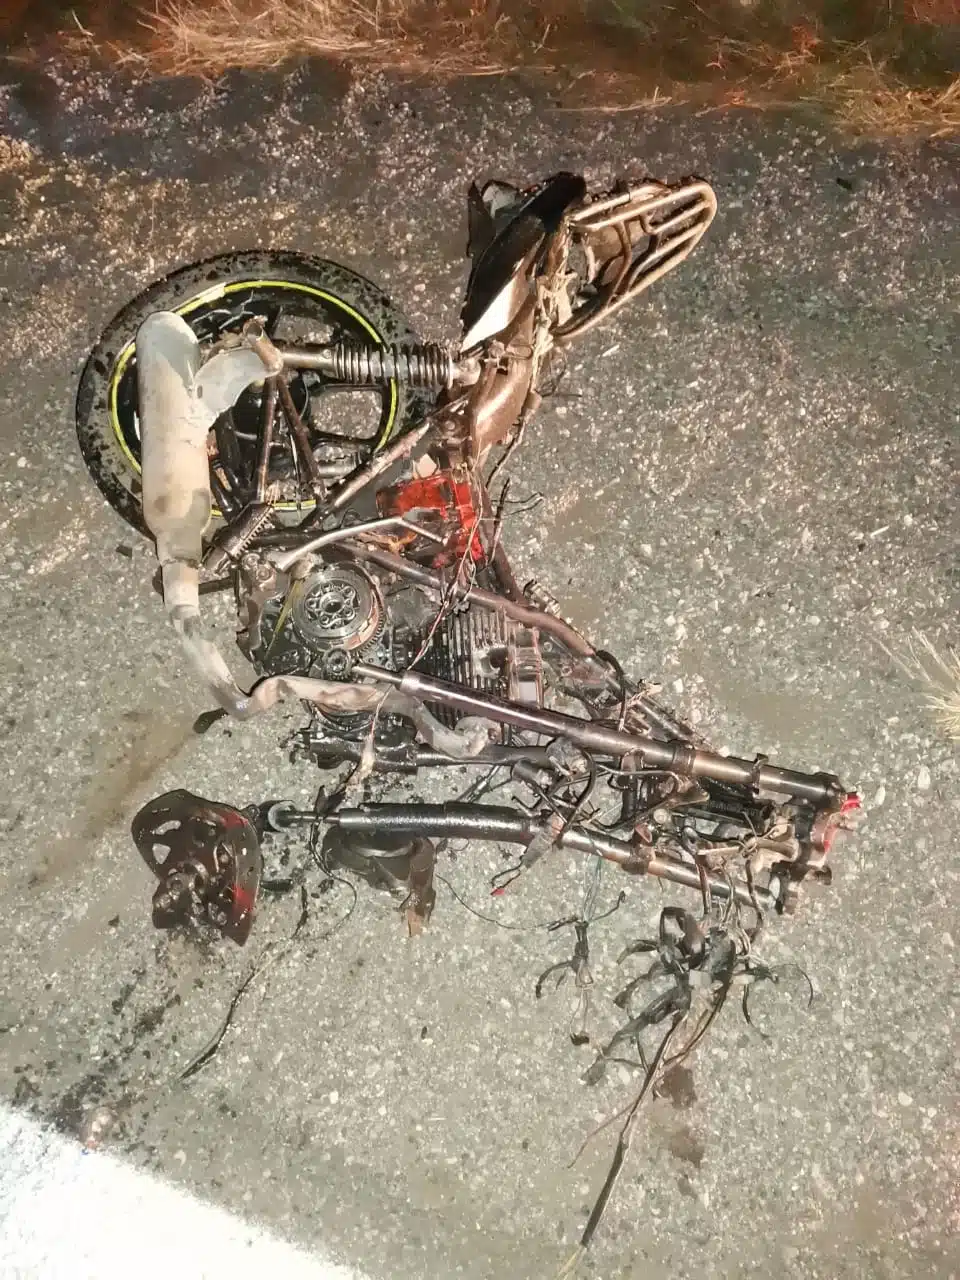 La motocicleta donde viajaba la pareja quedó destroza.